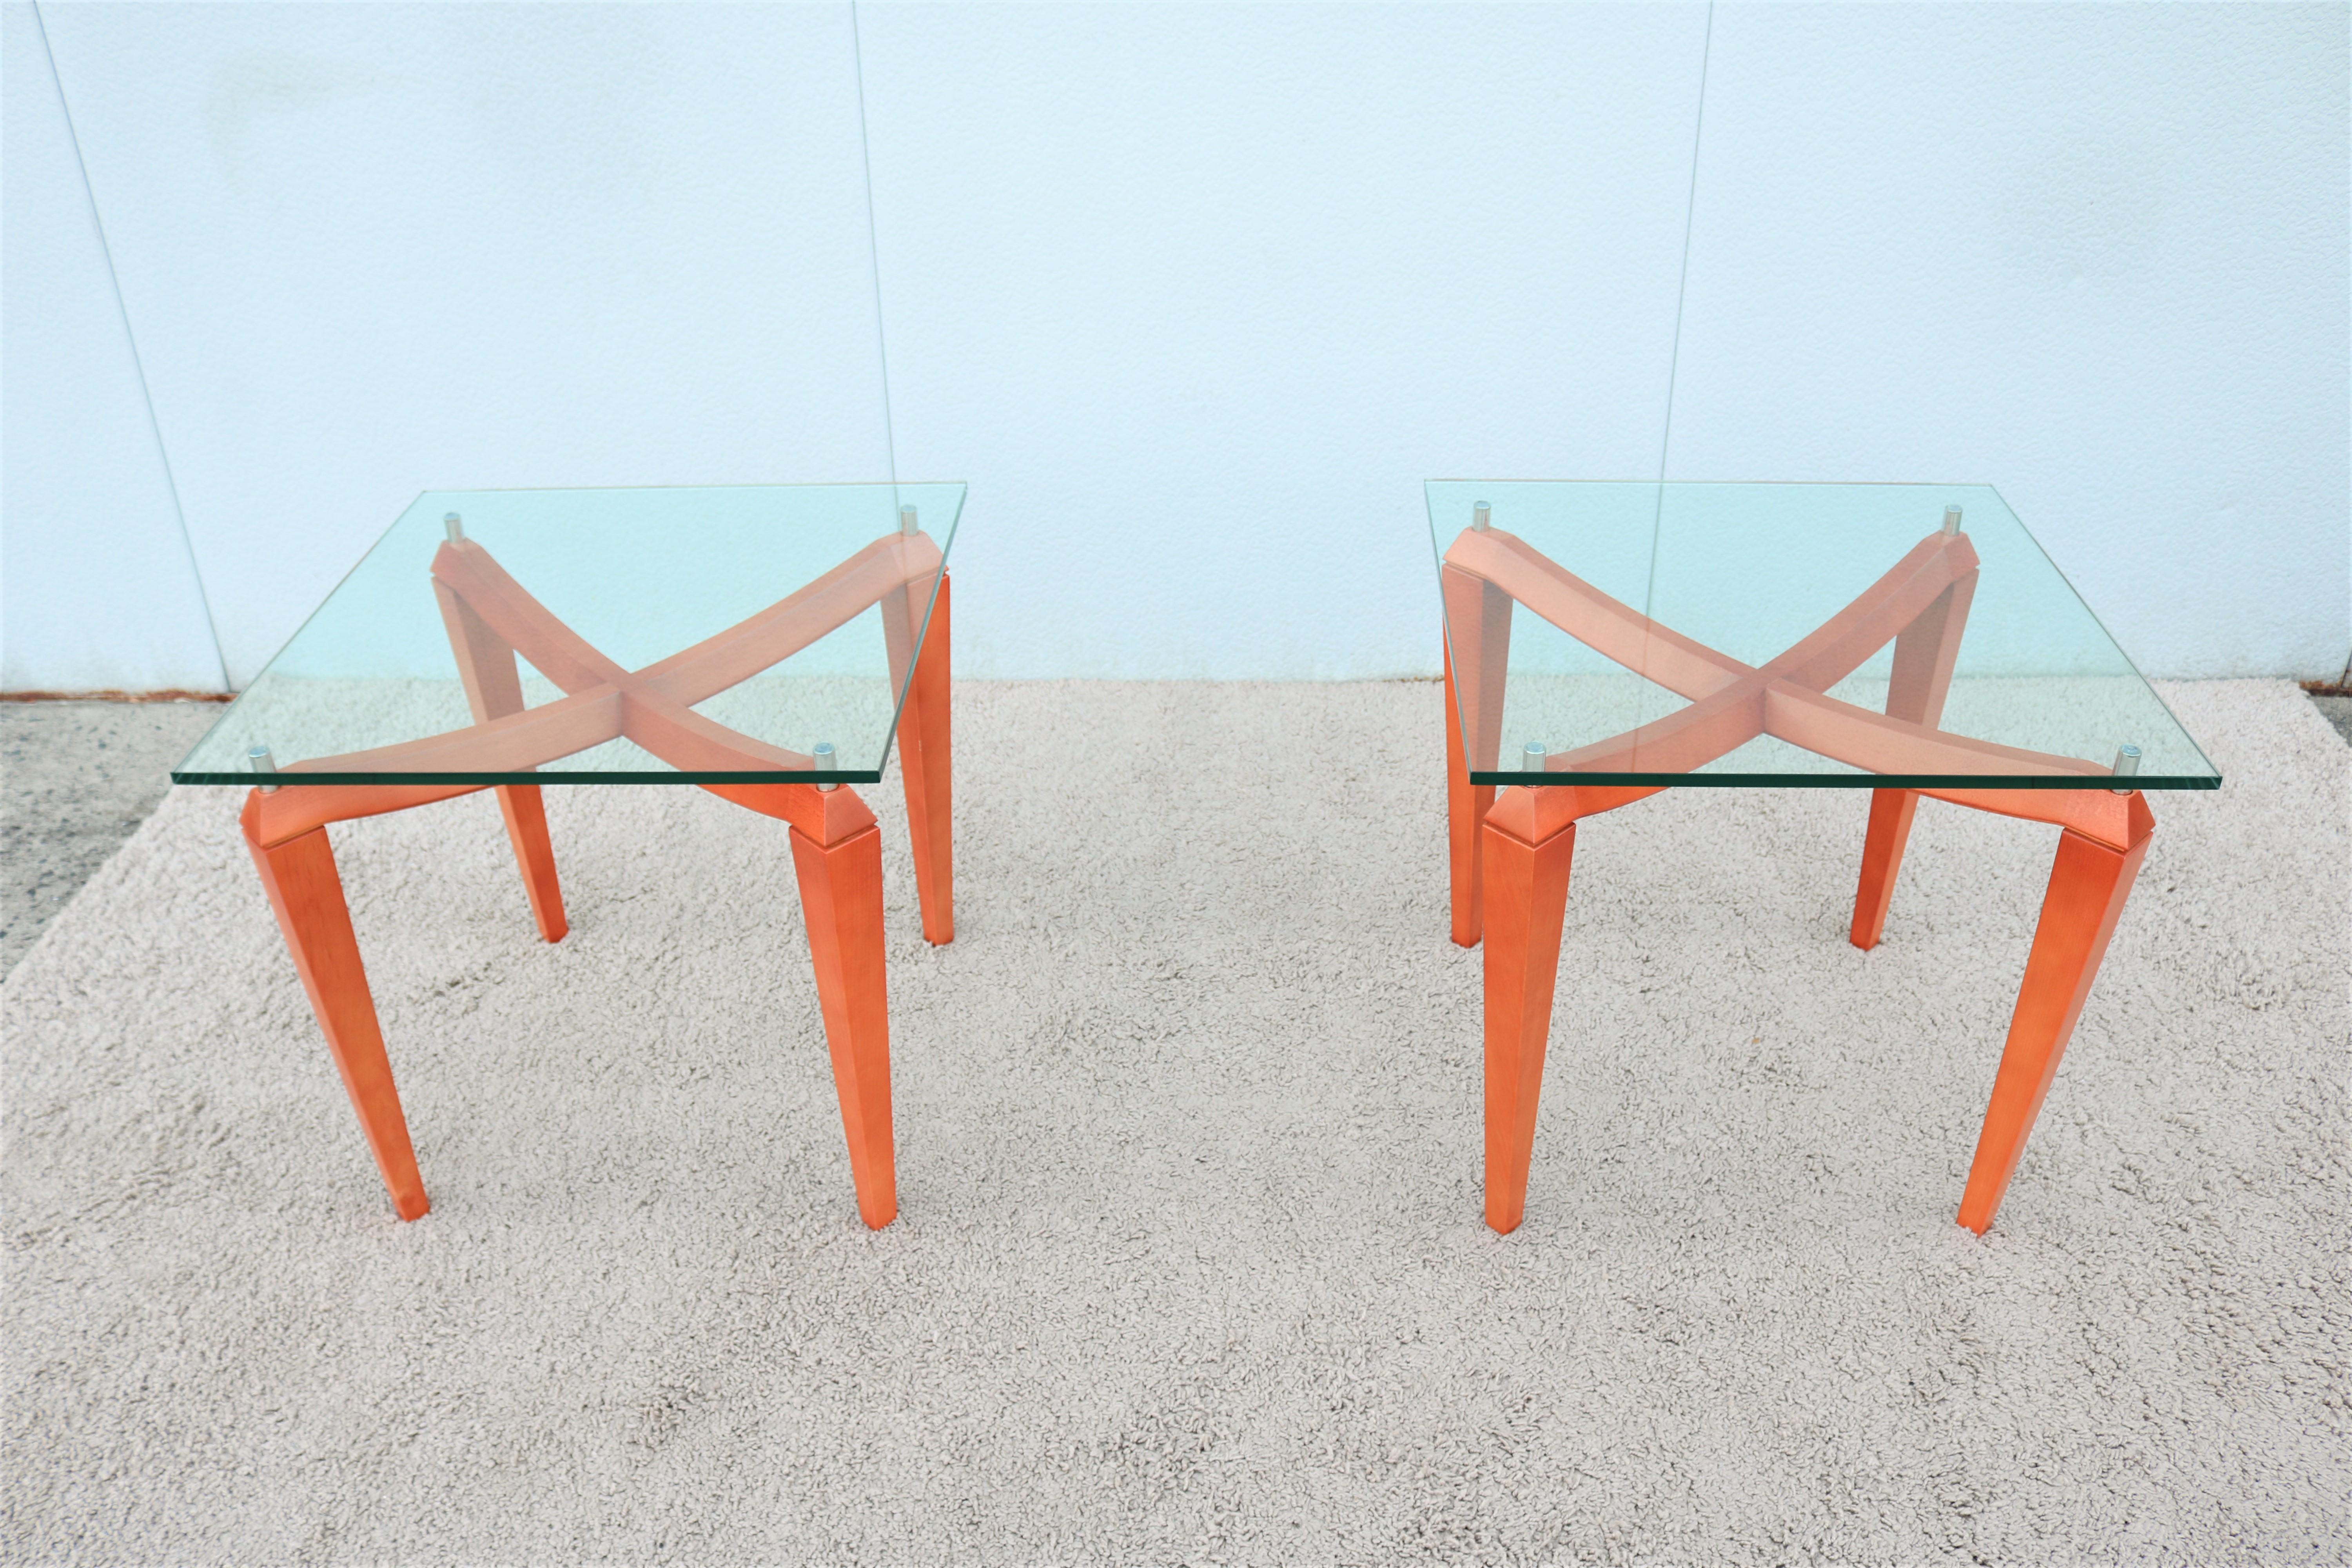 Fabuleuse paire de tables d'appoint carrées italiennes modernes, inspirées du design scandinave. 
Ces magnifiques tables allient le luxe que vous souhaitez à la fonctionnalité dont vous avez besoin.
La base sculptée donne un profil saisissant au